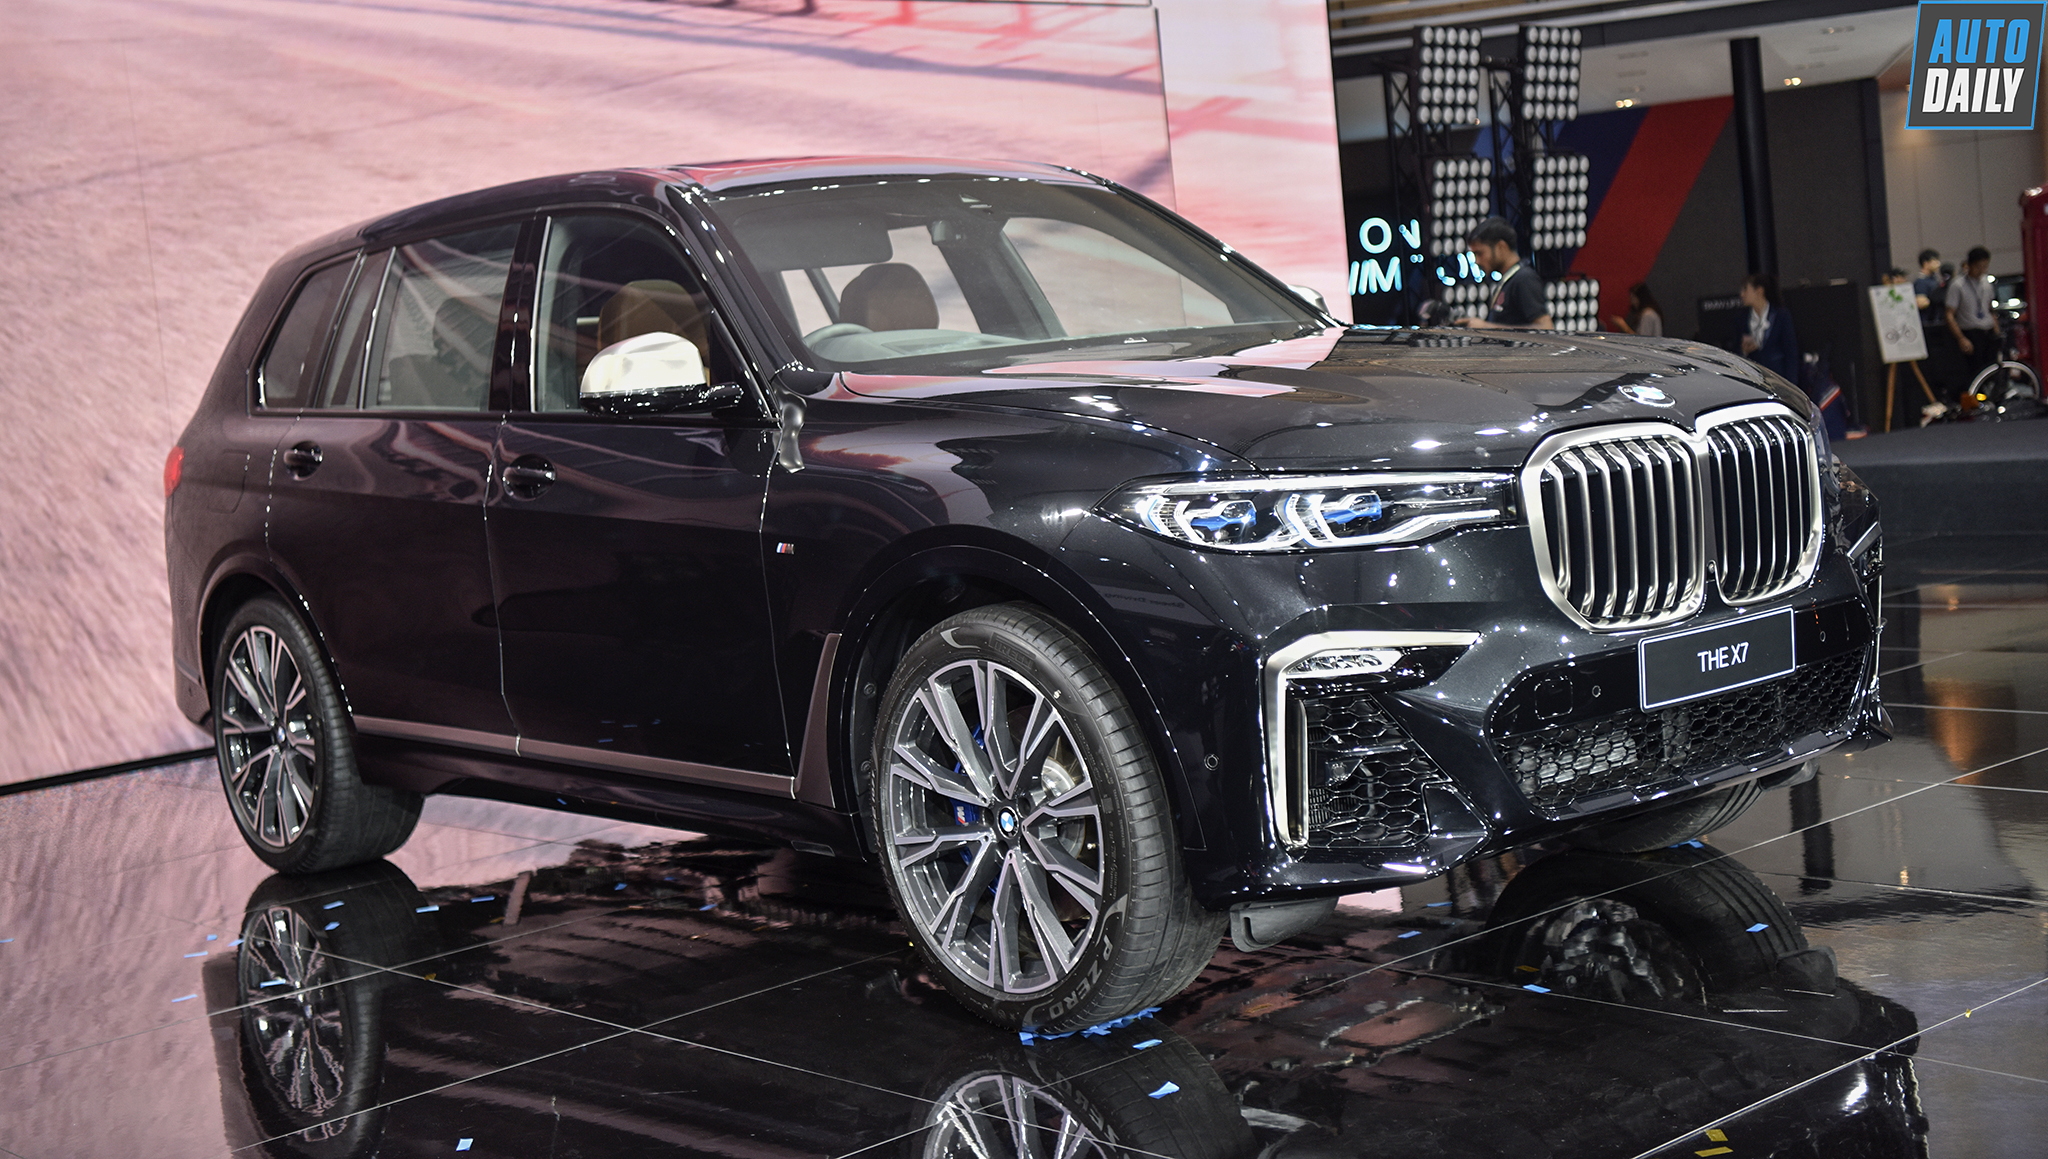 Khám phá chi tiết "khủng long" BMW X7 2019 tại Bangkok Motor Show